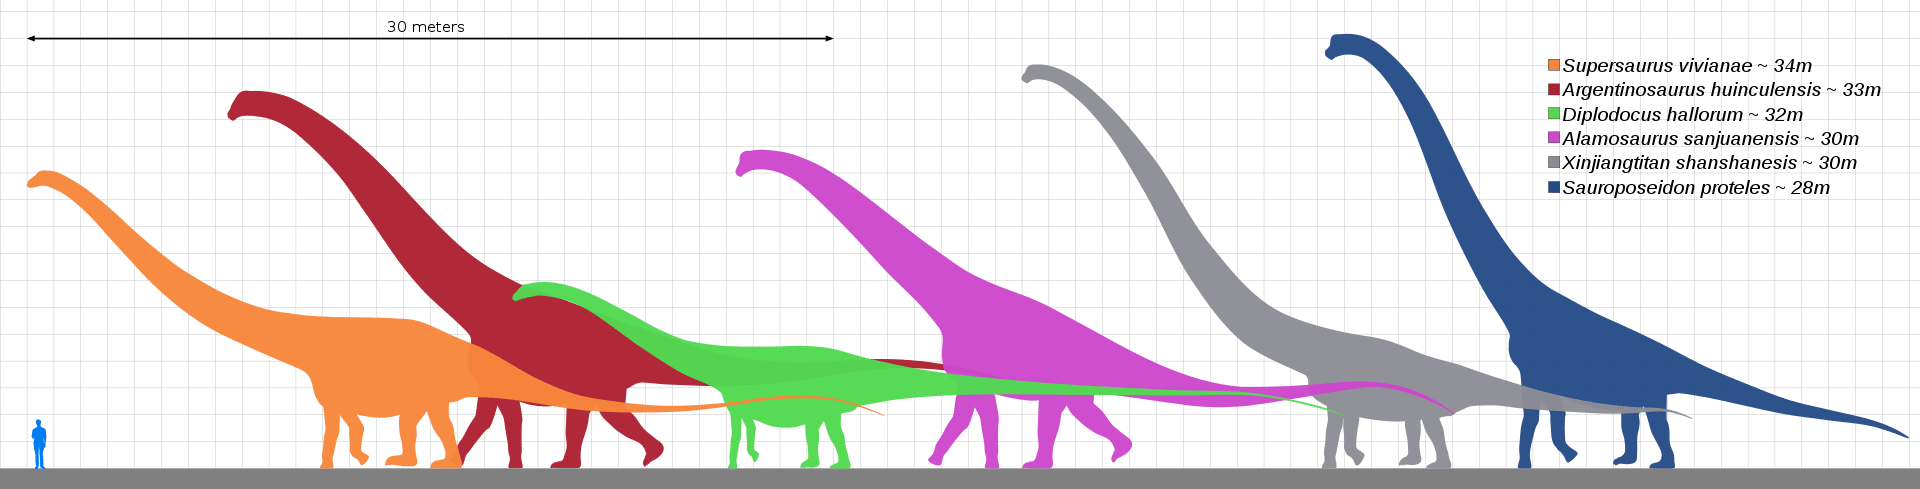 Porovnání velikostí největších dinosaurů. Argentinosaurus je červený.